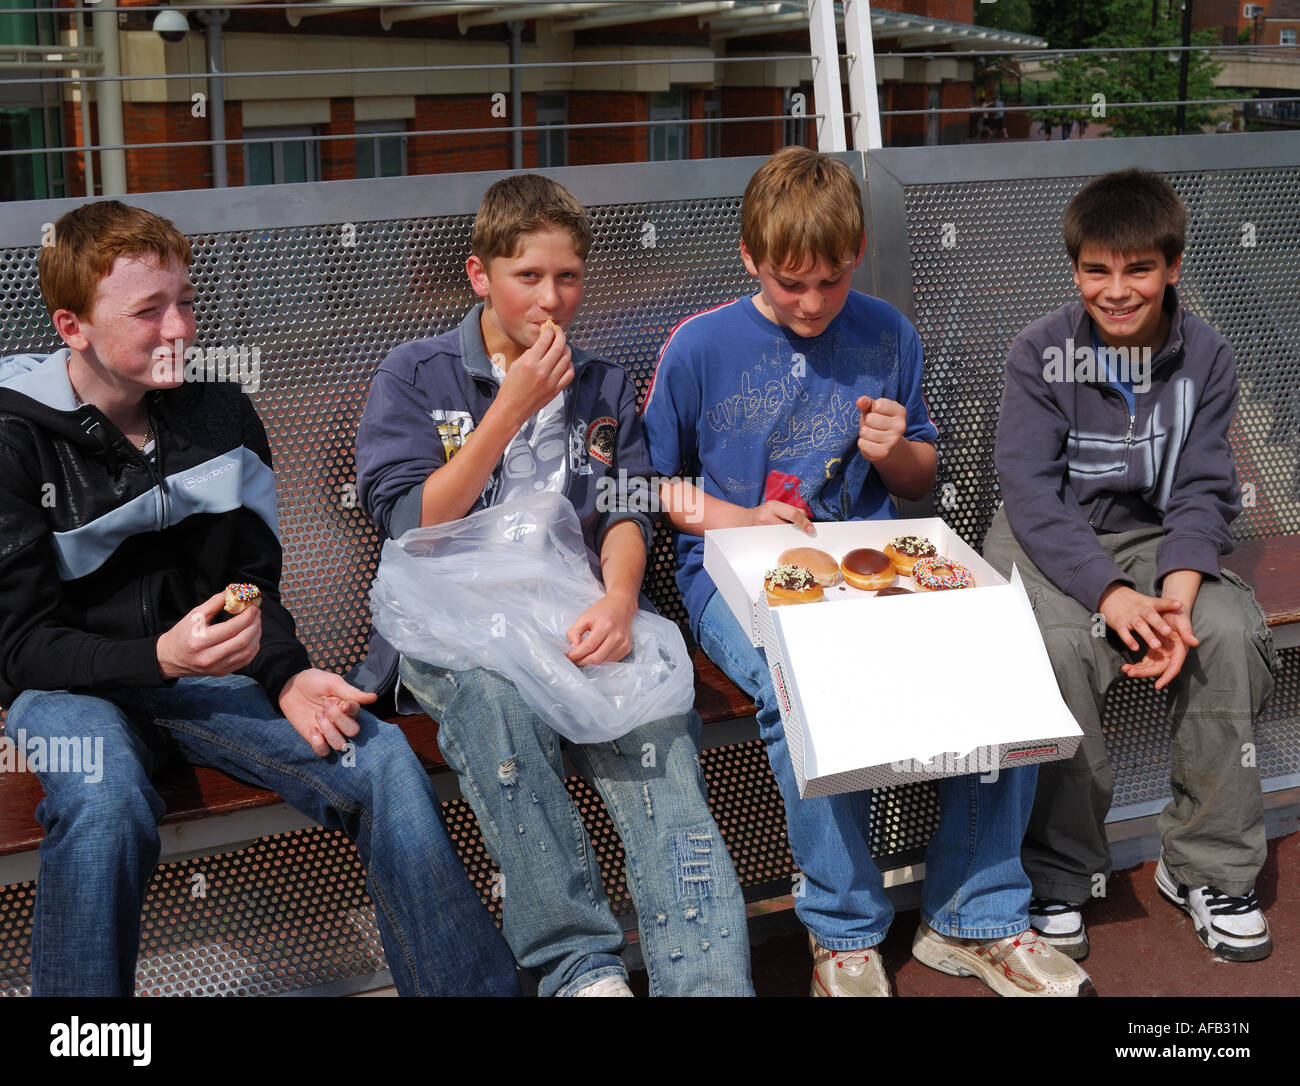 Groupe d'adolescents de manger des beignes sur banc, Reading, Berkshire, Angleterre, Royaume-Uni Banque D'Images